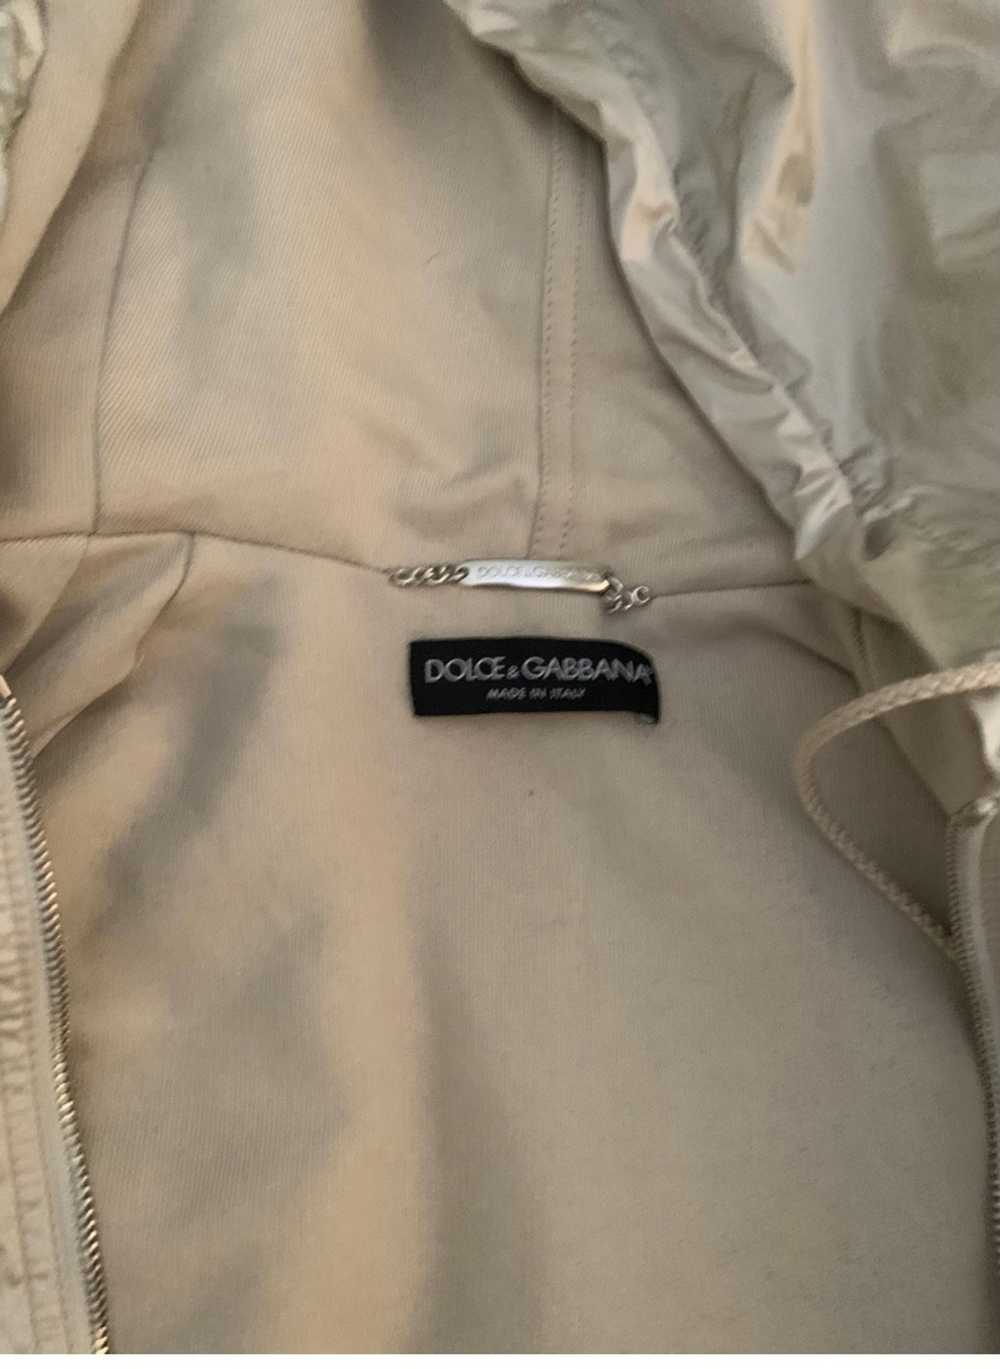 Dolce & Gabbana Dolce and Gabbana Tape Logo Jacket - image 4